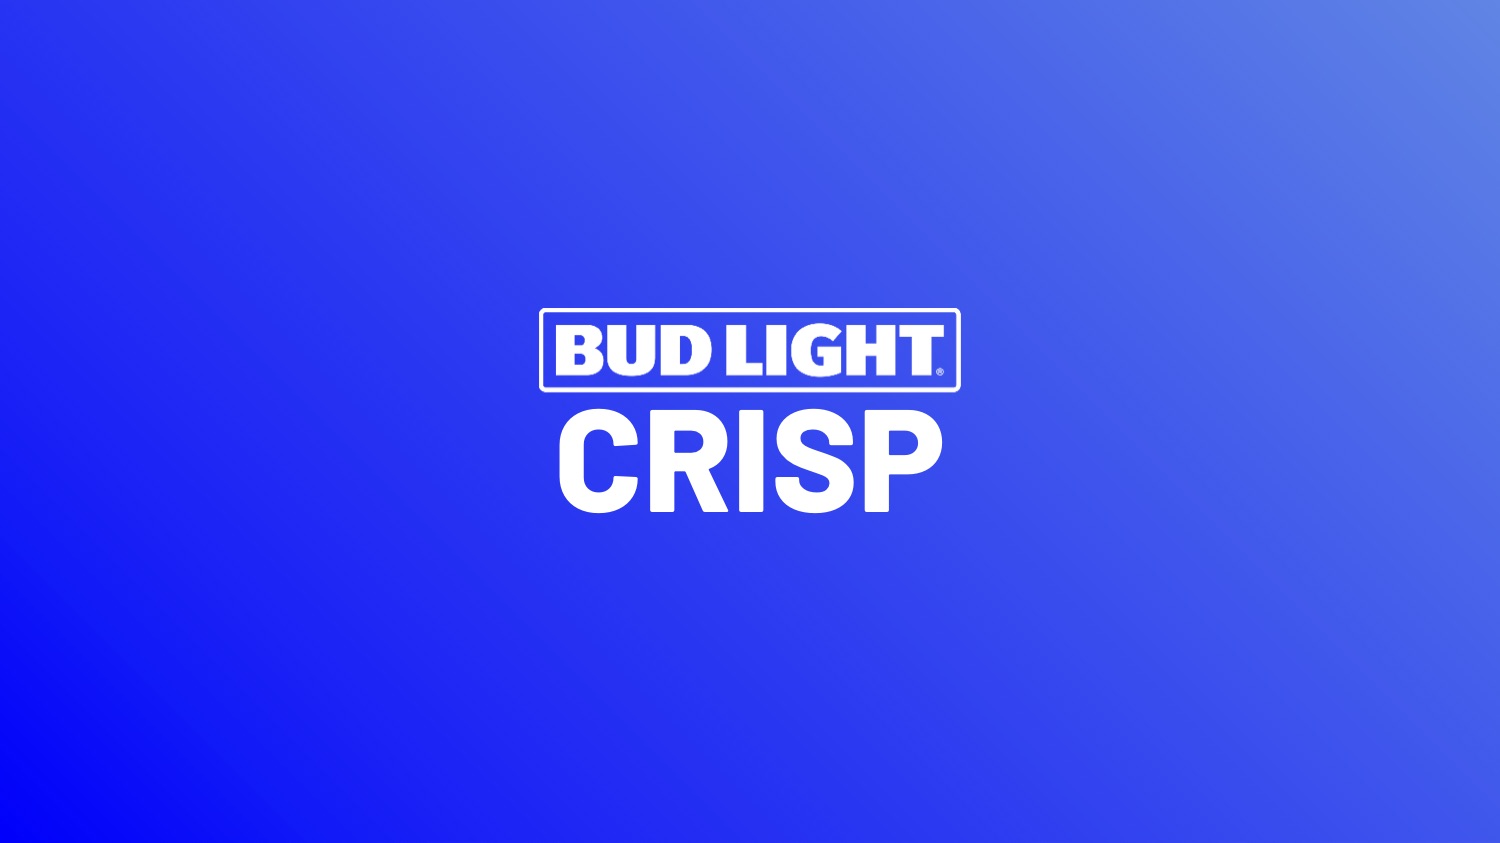 Bud Light: Crisp